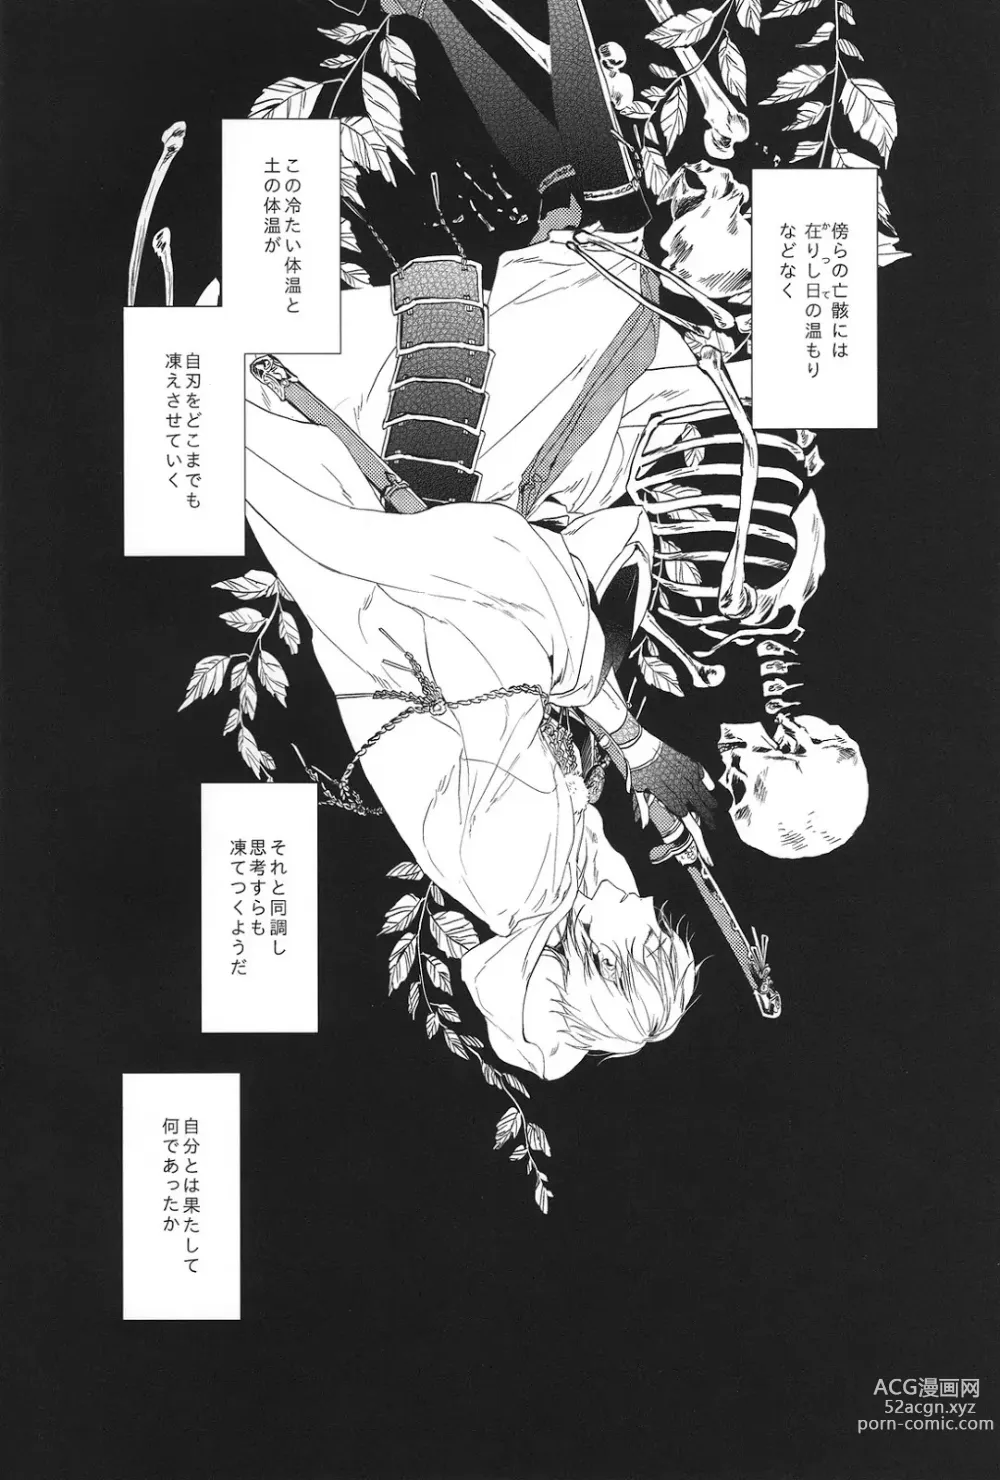 Page 3 of doujinshi Kimi no ude no naka de kogoeru fuyu o sugosou